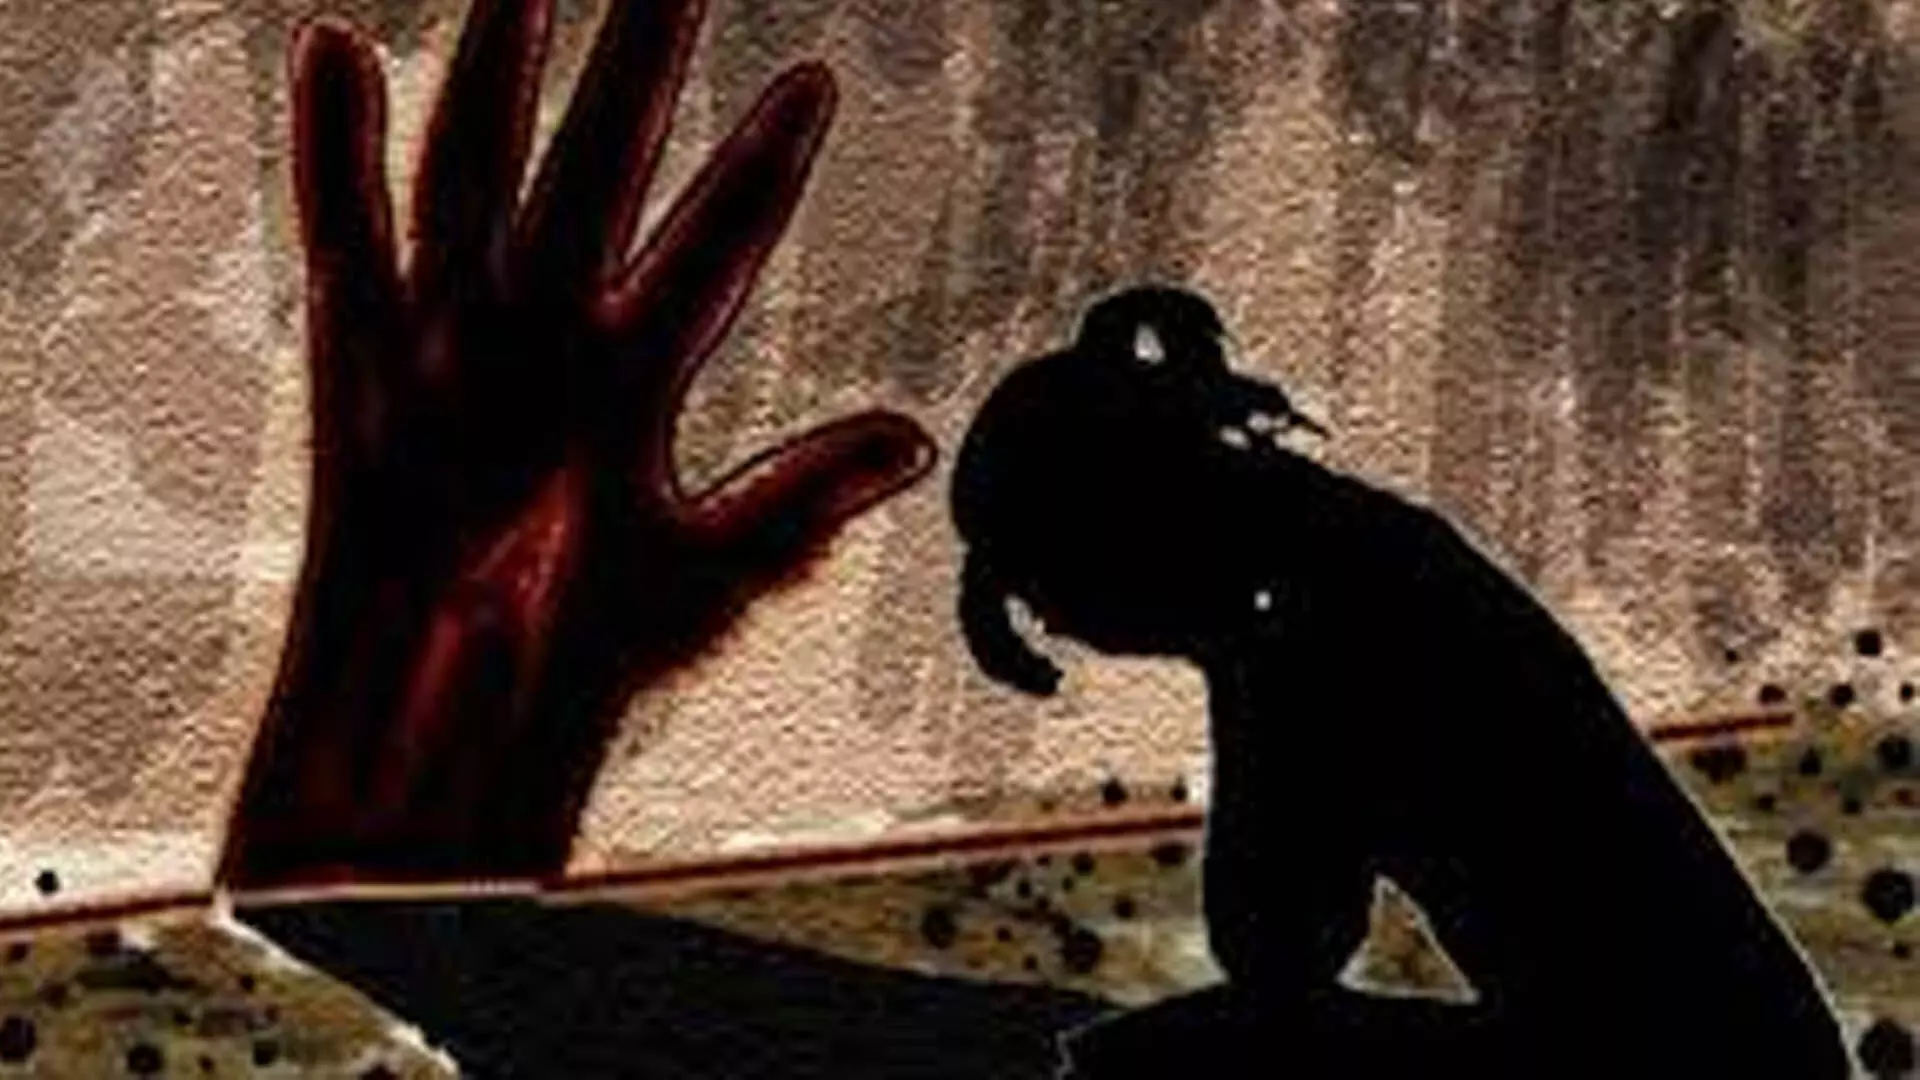 त्रिपुरा 57 वर्षीय व्यक्ति को नाबालिग से यौन उत्पीड़न आरोप में गिरफ्तार किया